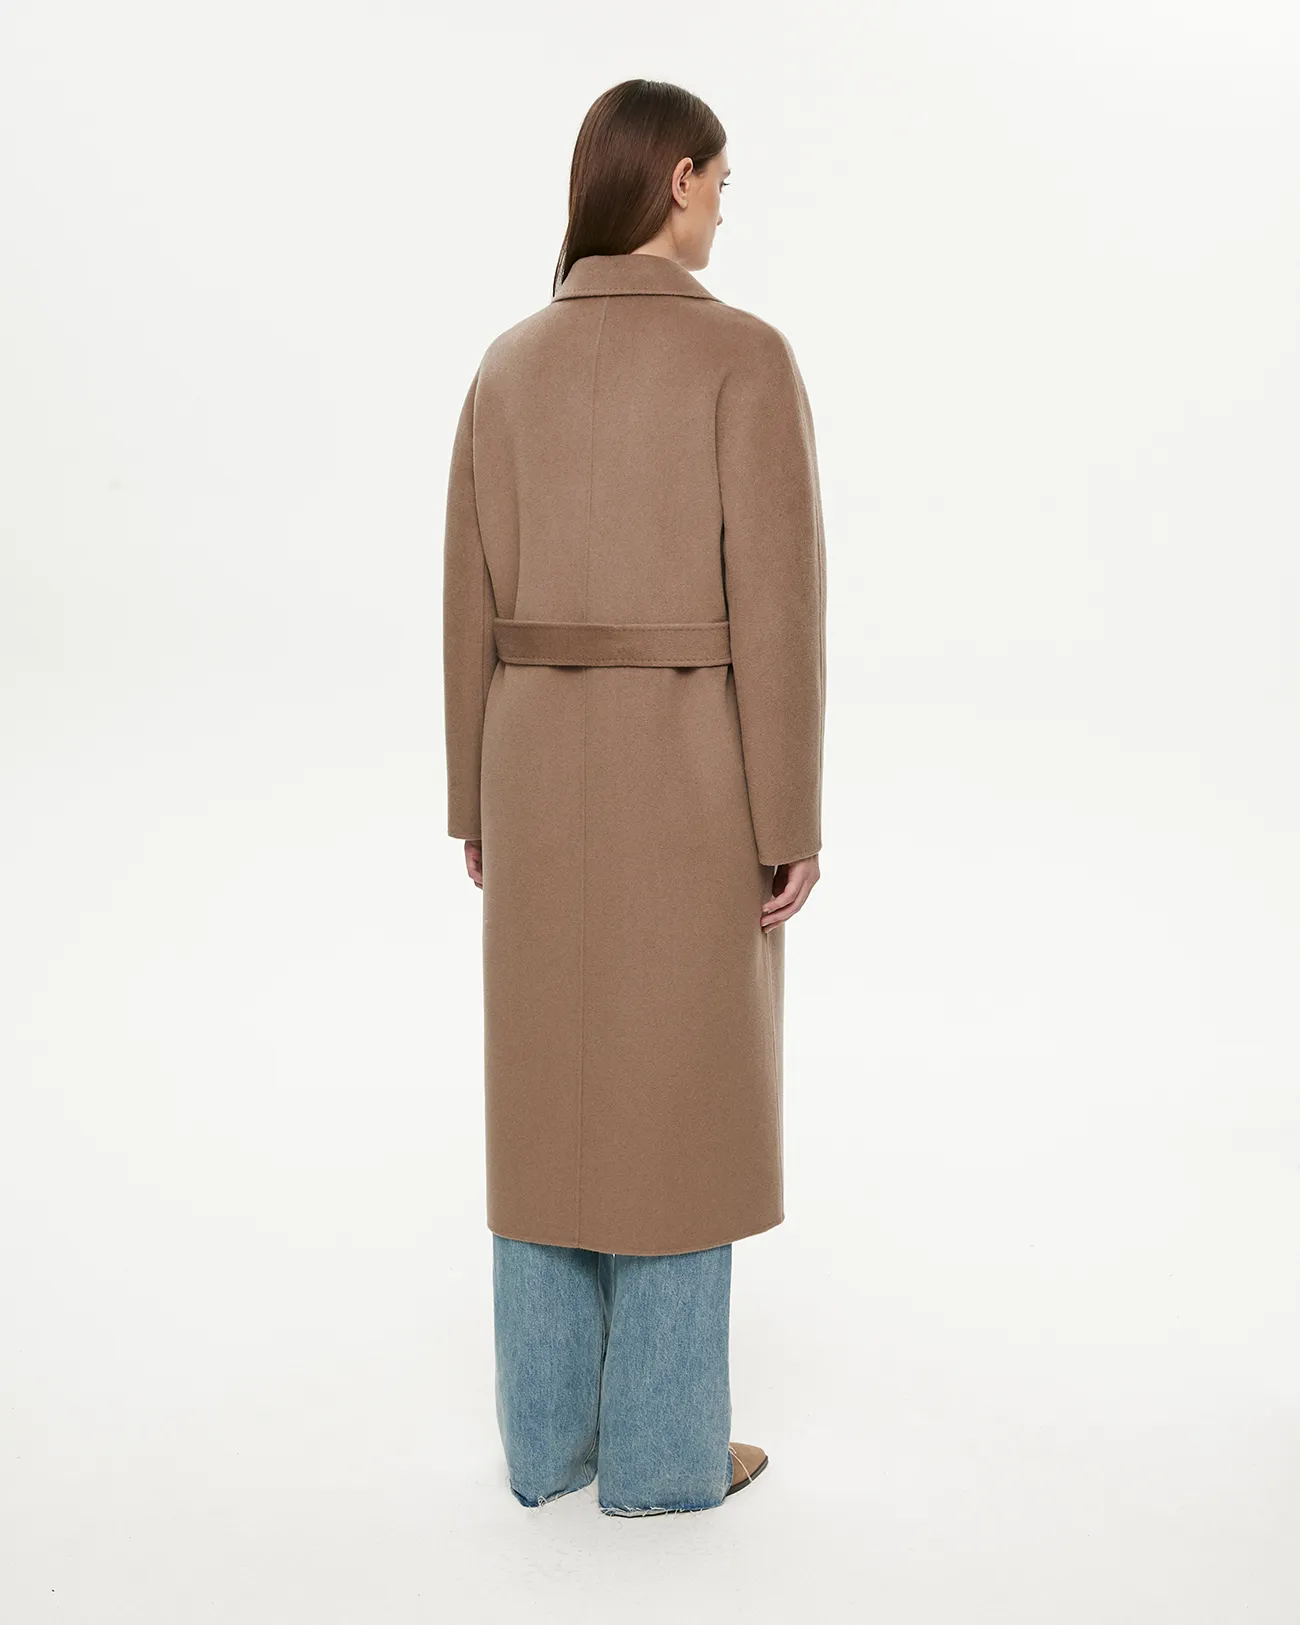 Пальто из шерсти с кашемиром коричневого цвета